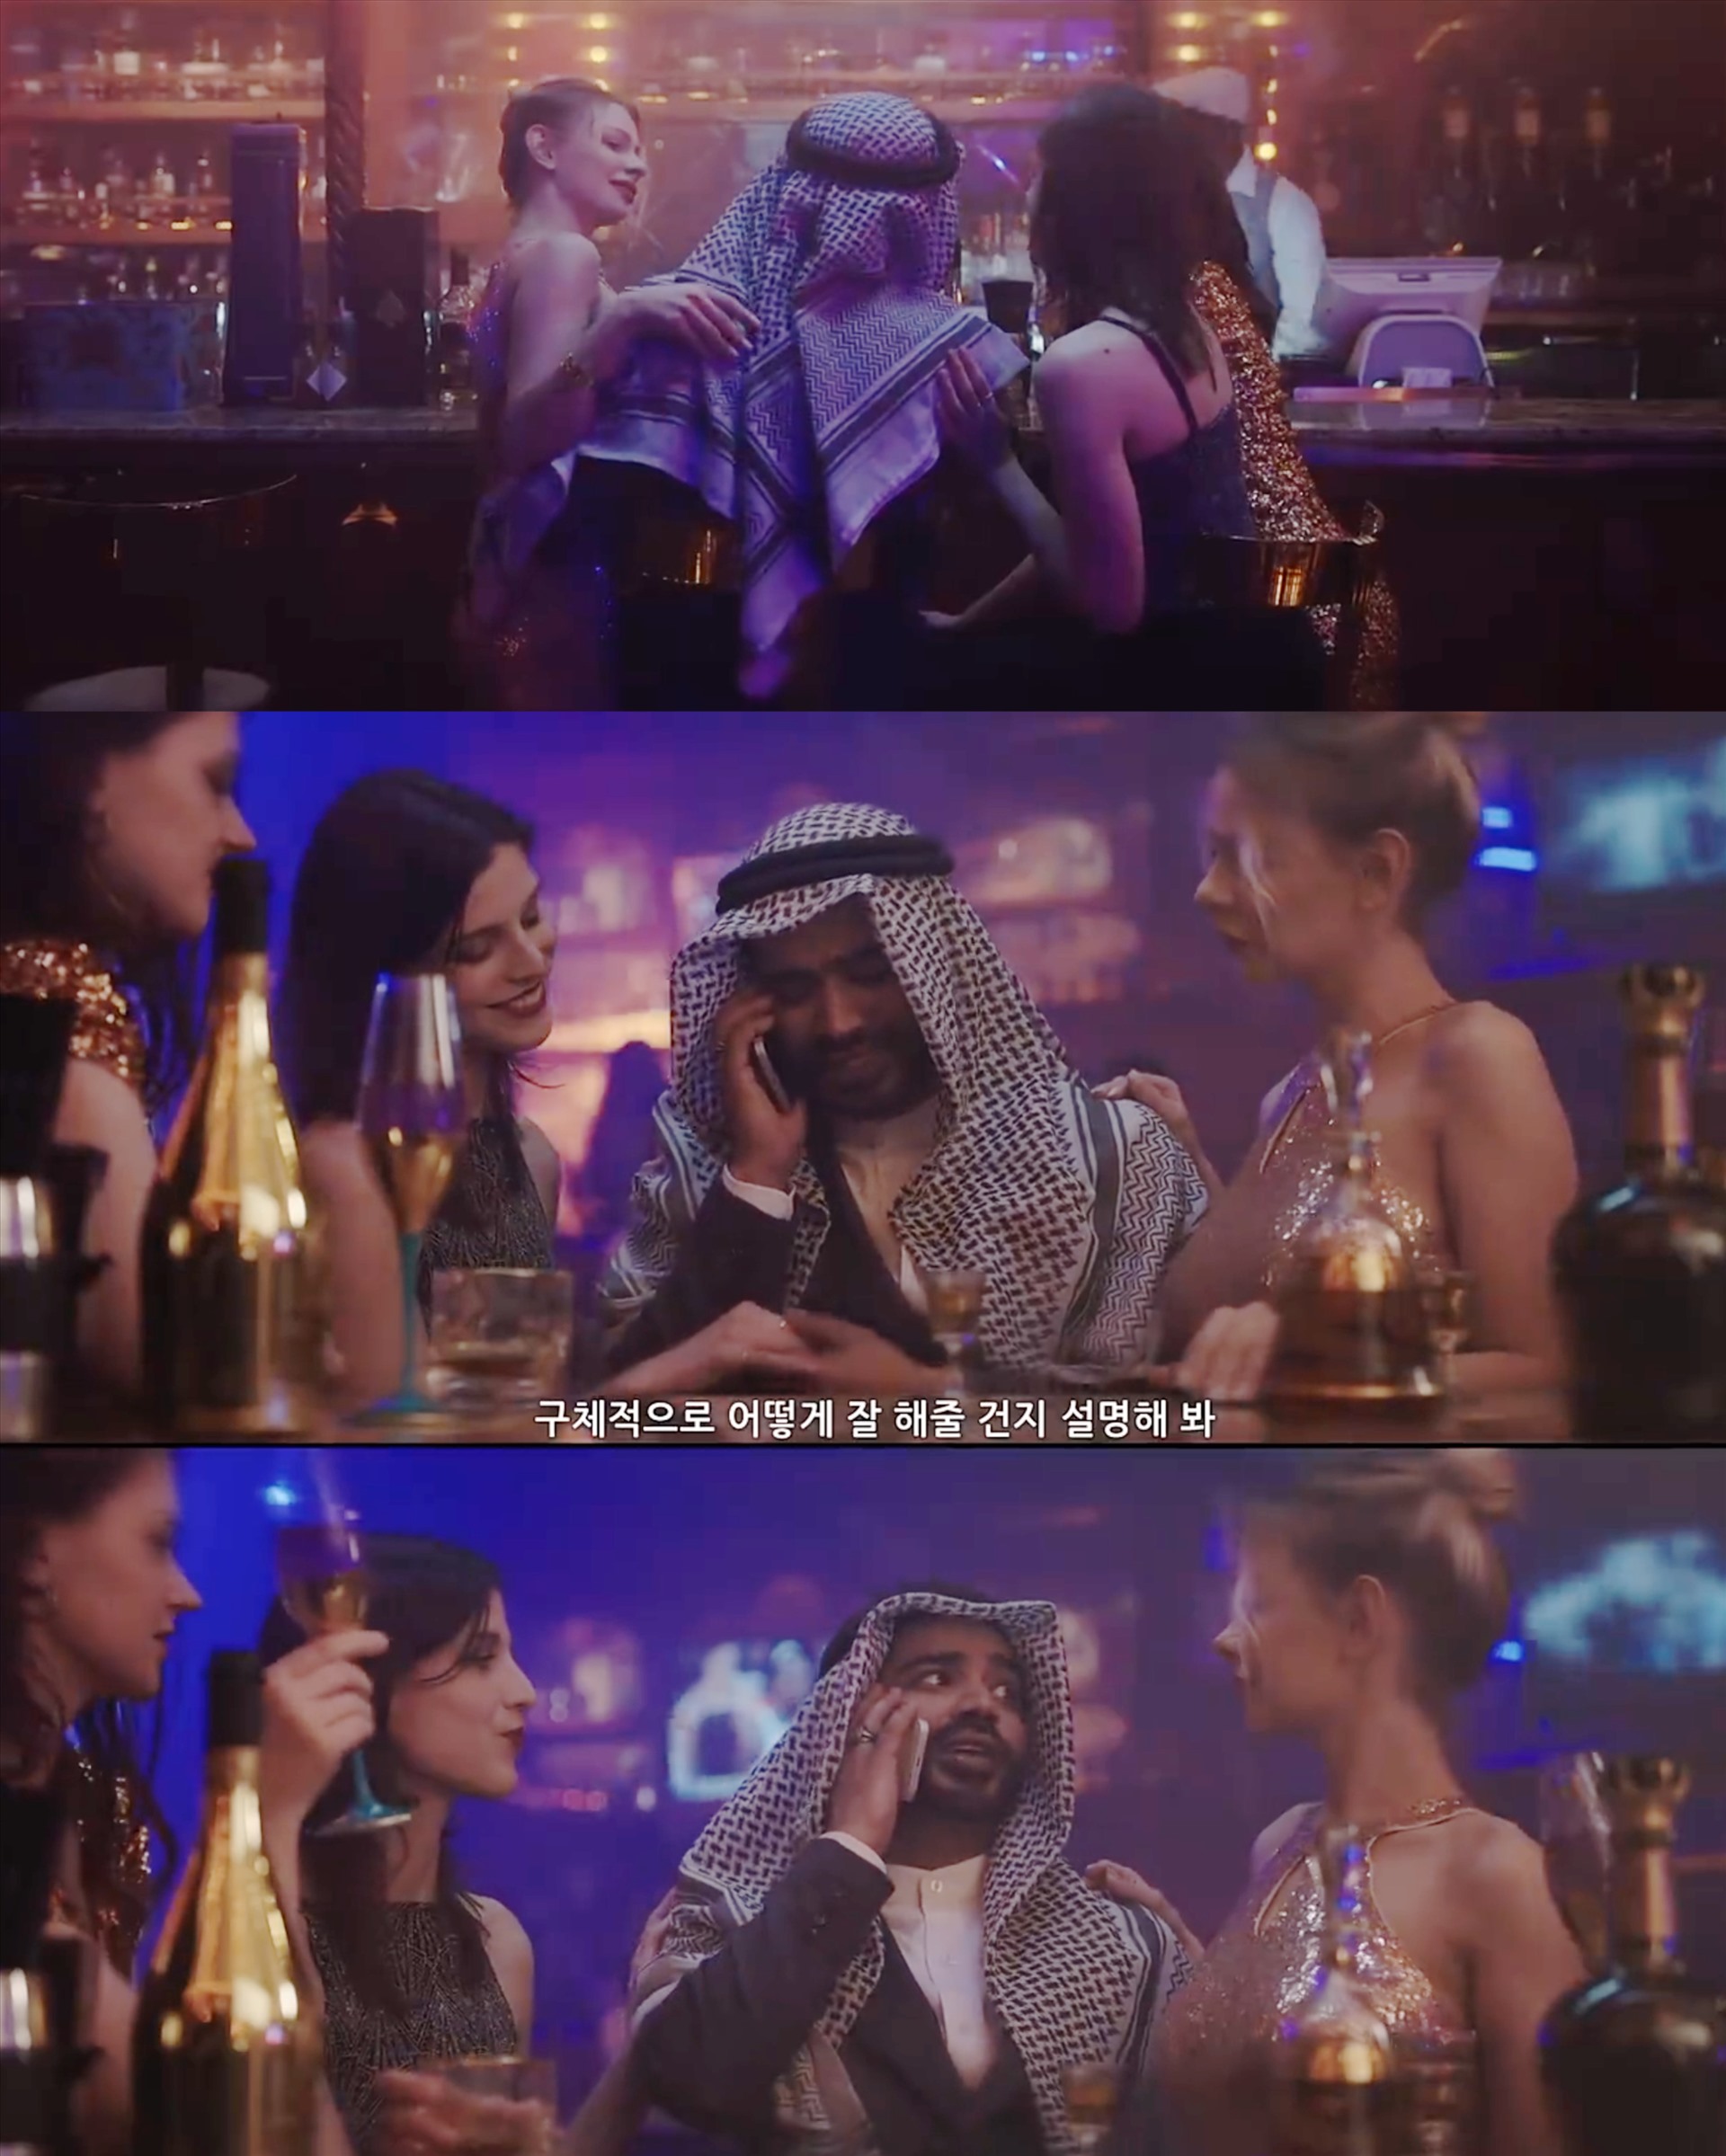 Hình ảnh vương tử Samir trên phim “King The Land” bị khán giả Ả Rập phản ứng dữ dội. Ảnh: Chụp màn hình